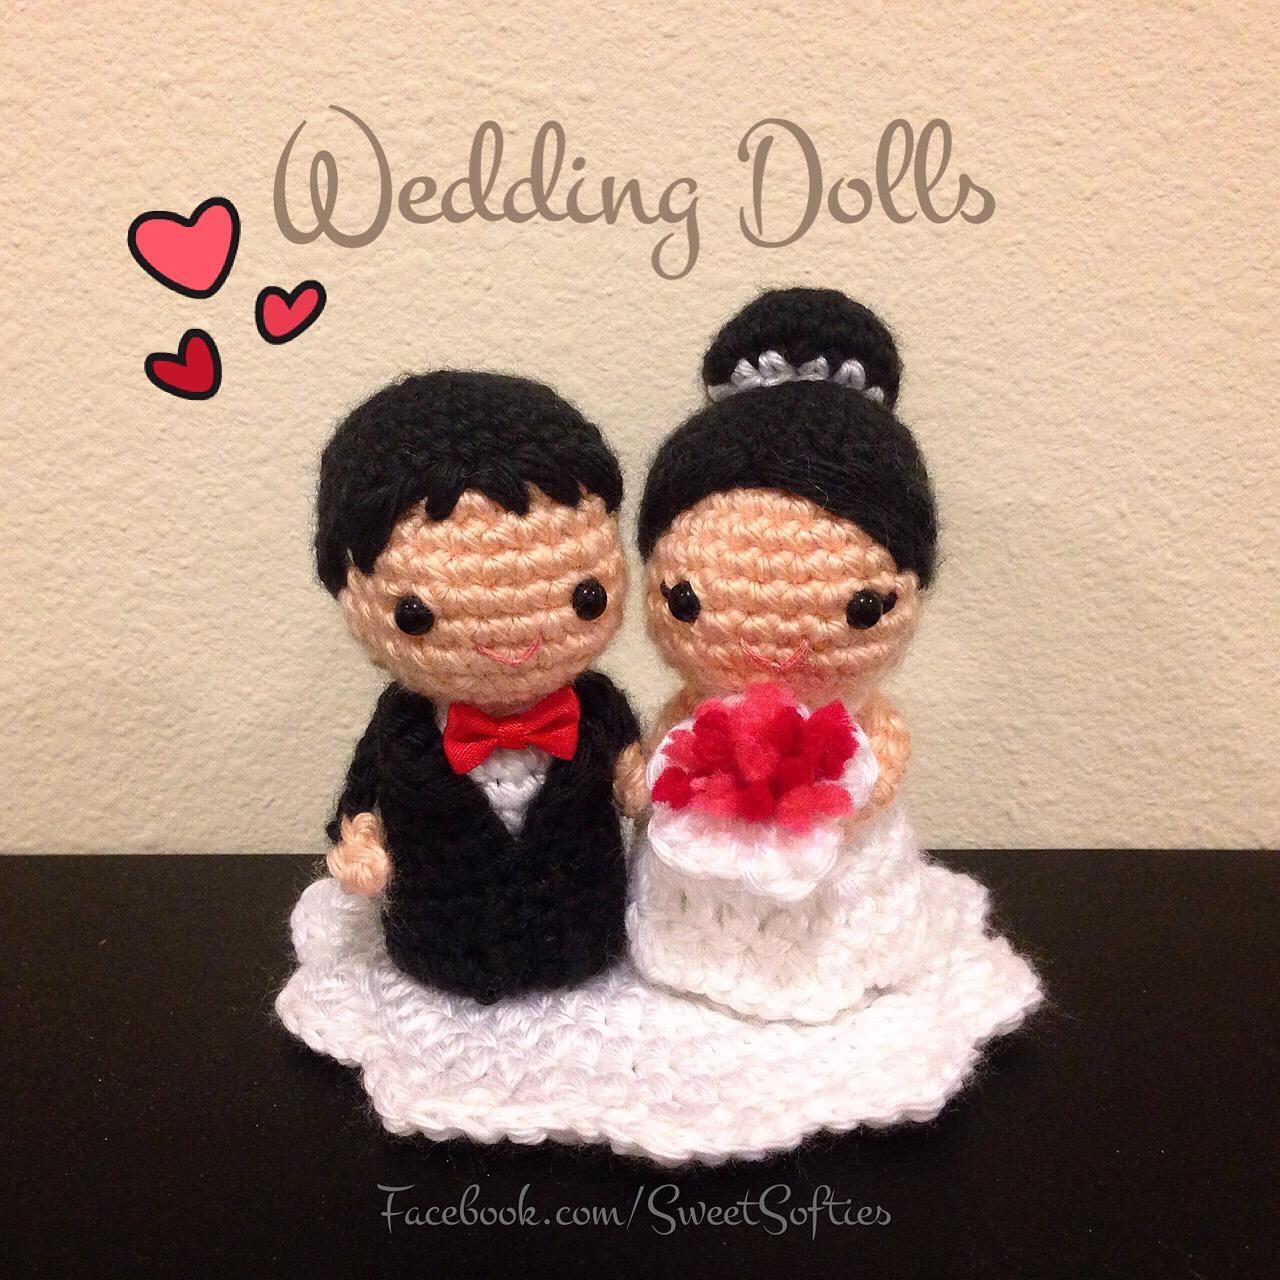 Crochet Doll Cuddly Baby Doll Wedding couple Rag Doll Soft Toy Stuffed Doll Soft little doll Groom,Amigurumi Baby Doll Super cute